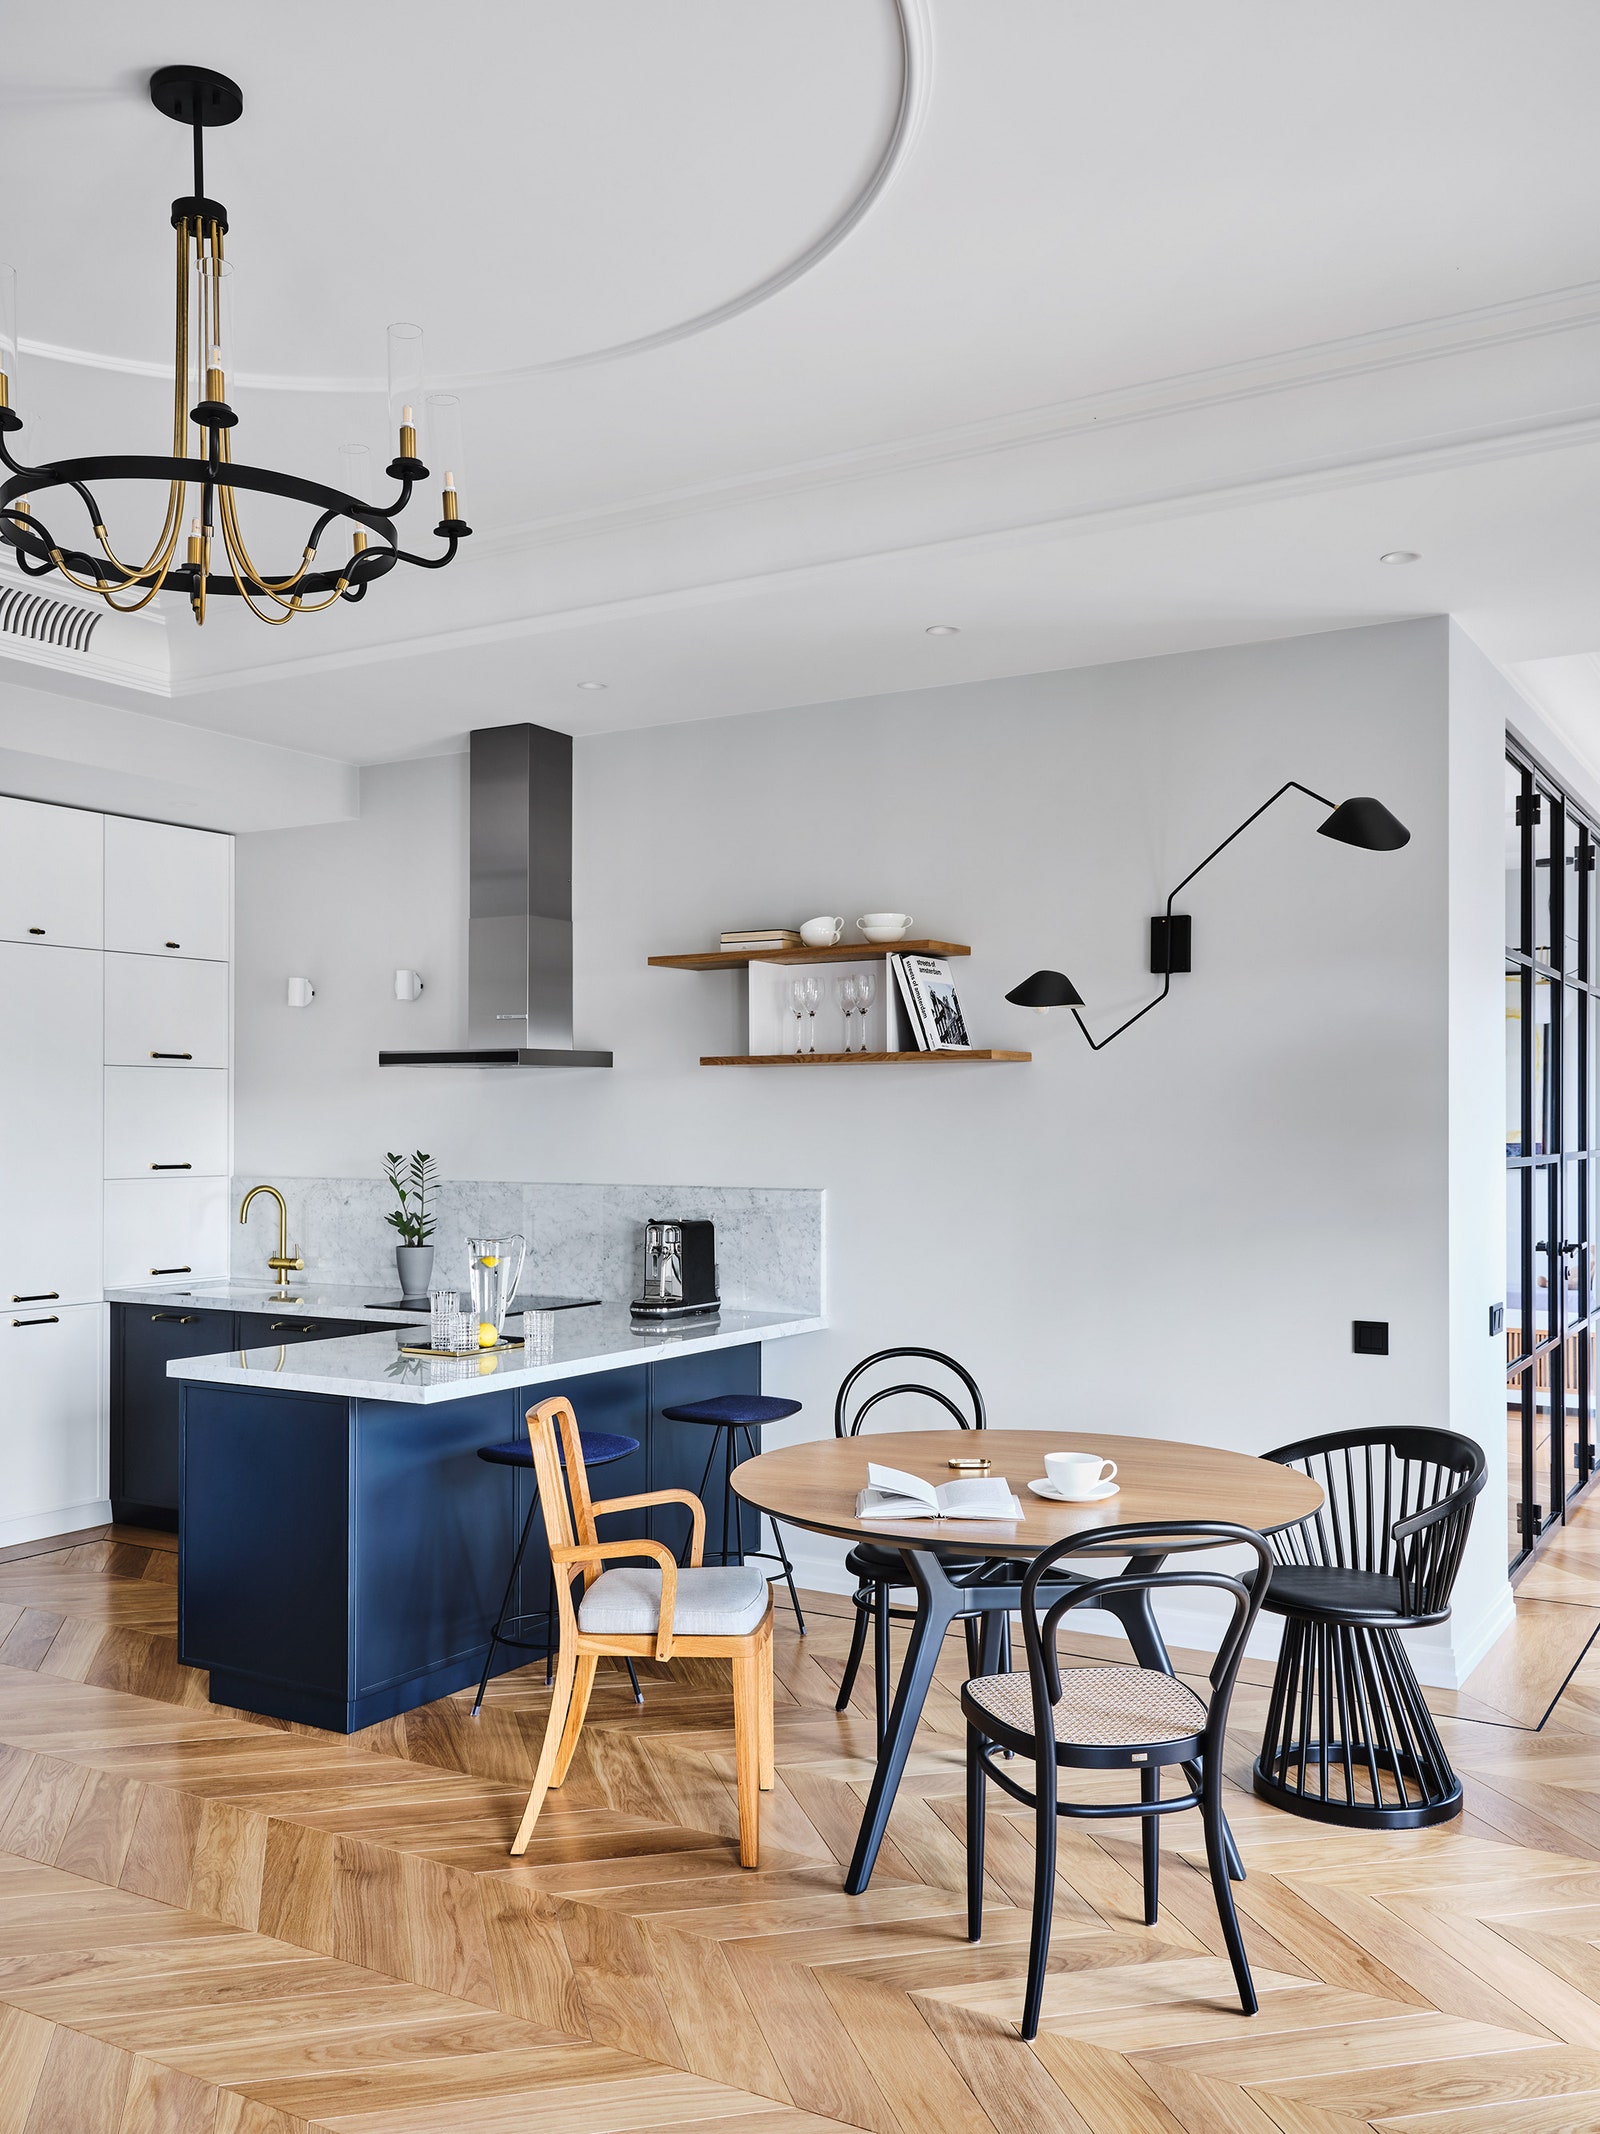 Зона кухни и столовой. Кухонный гарнитур с мраморной столешницей сде­лан по эскизам дизайнера стол Unika Møblär стулья...